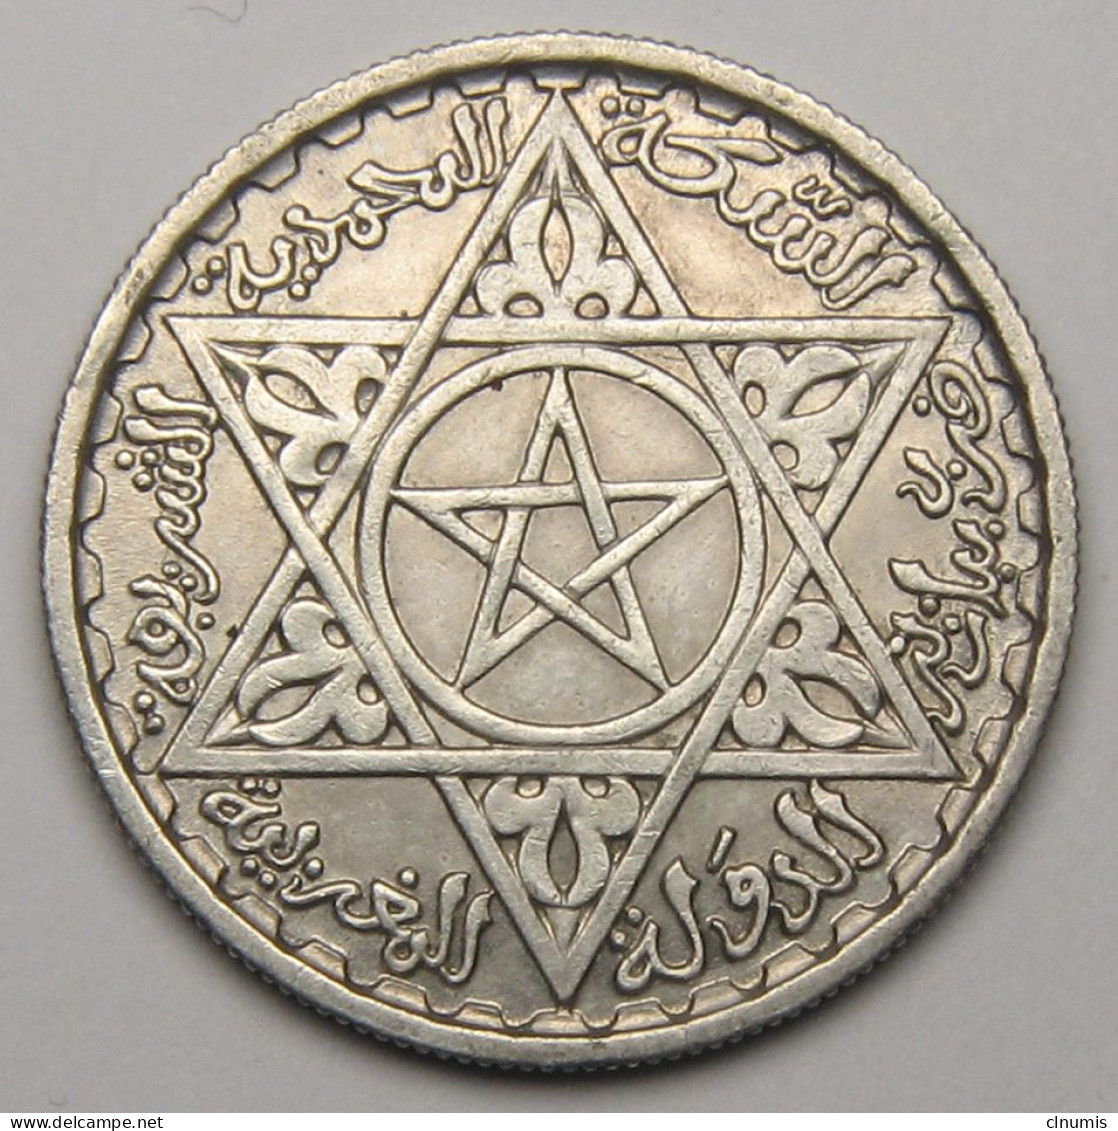 Maroc, Protectorat Français, 100 Francs 1953 (1372), Argent - Marocco